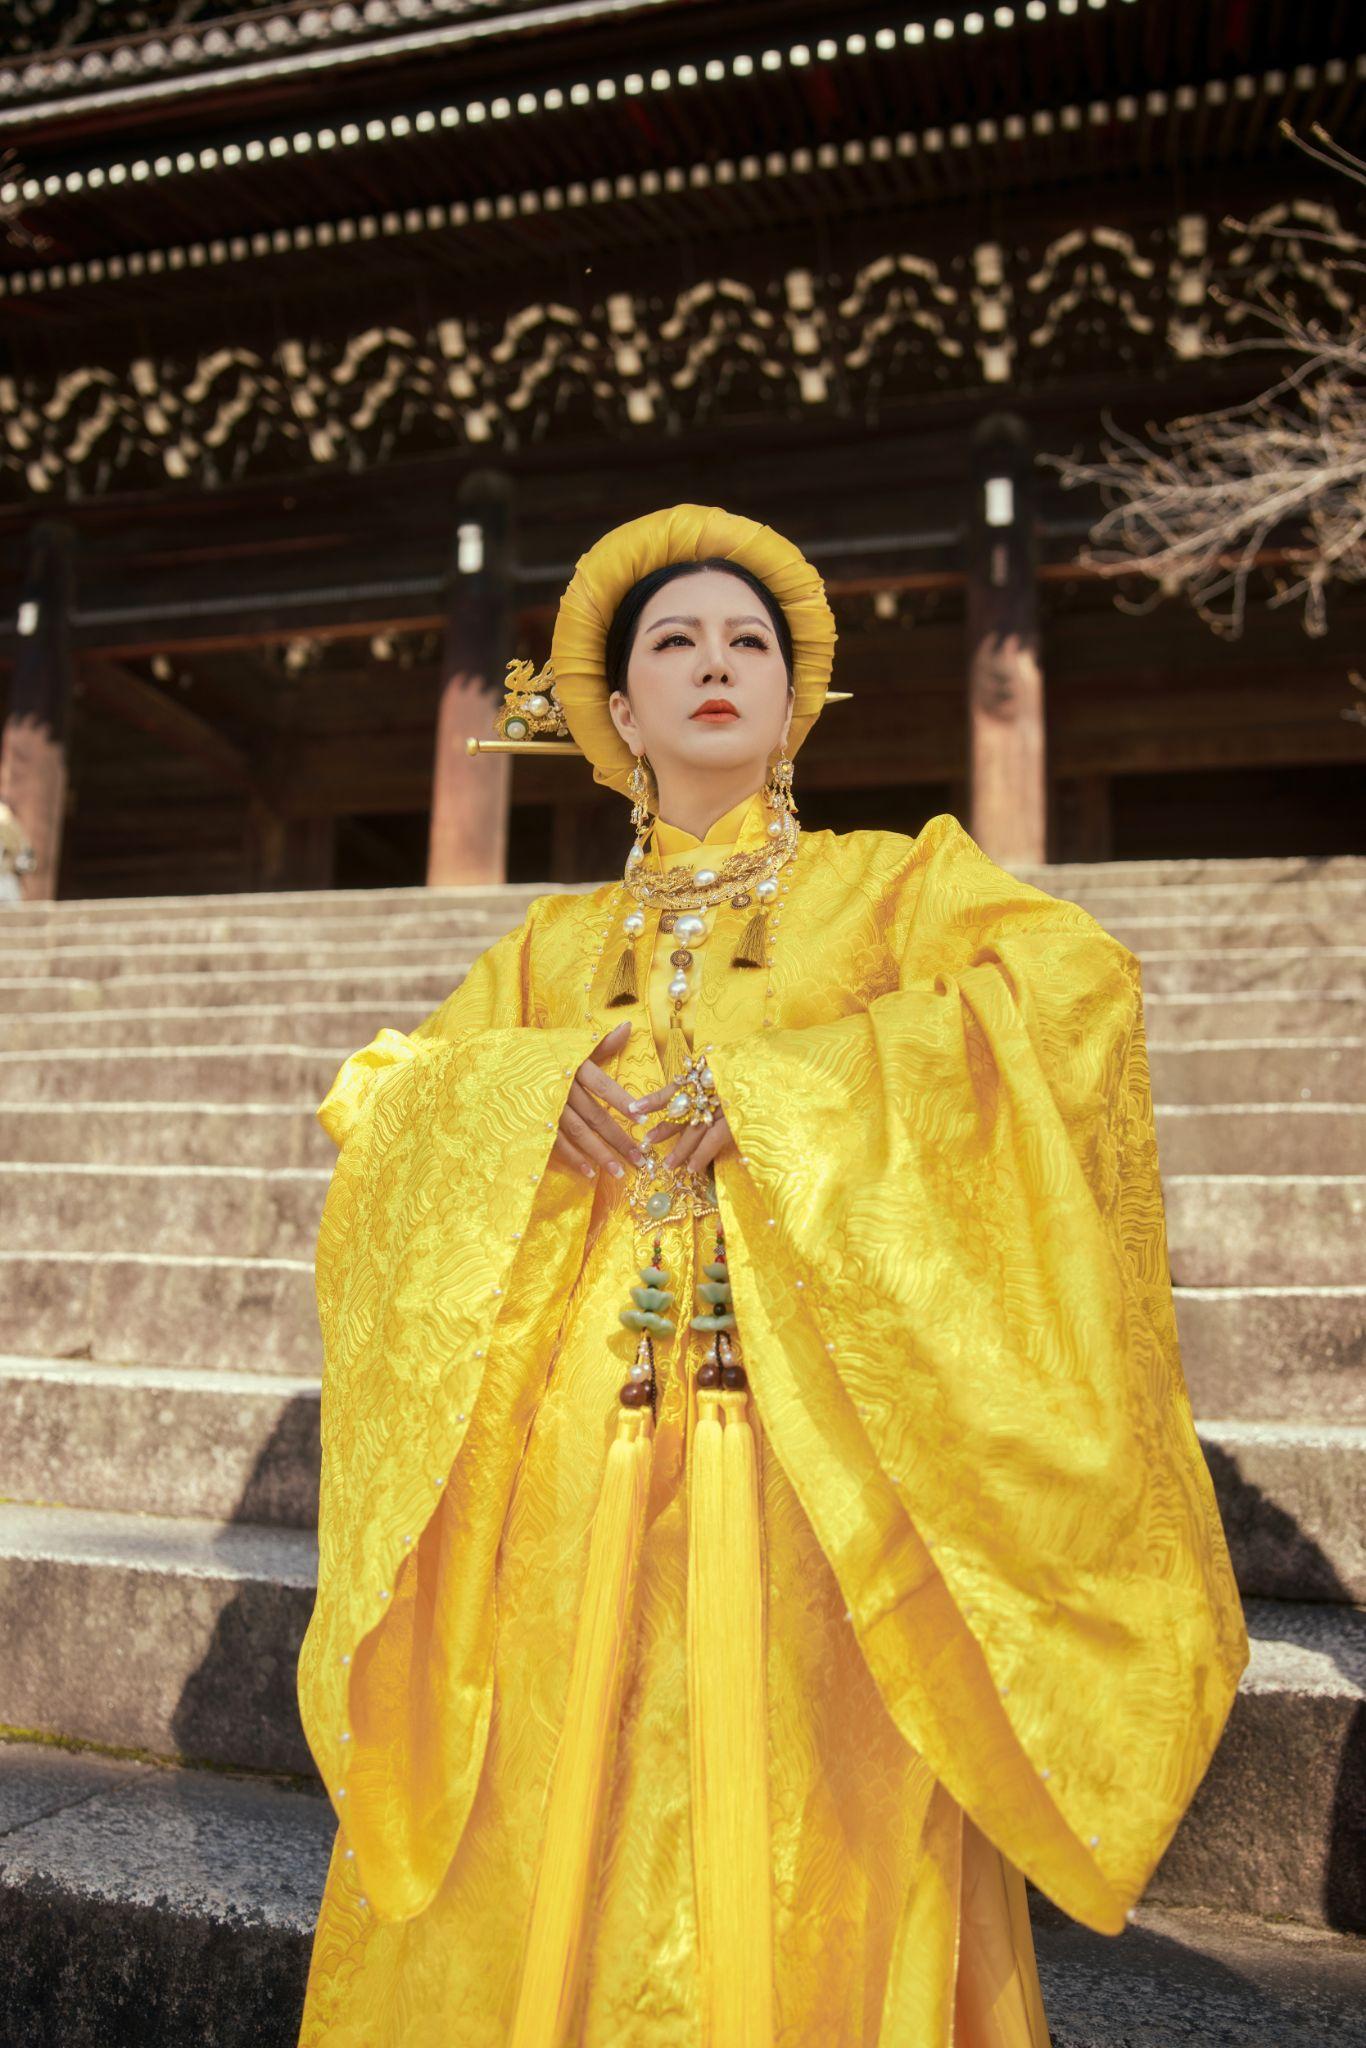 Ca sĩ Đinh Hiền Anh và tình yêu đặc biệt với trang phục truyền thống Việt  - Ảnh 4.